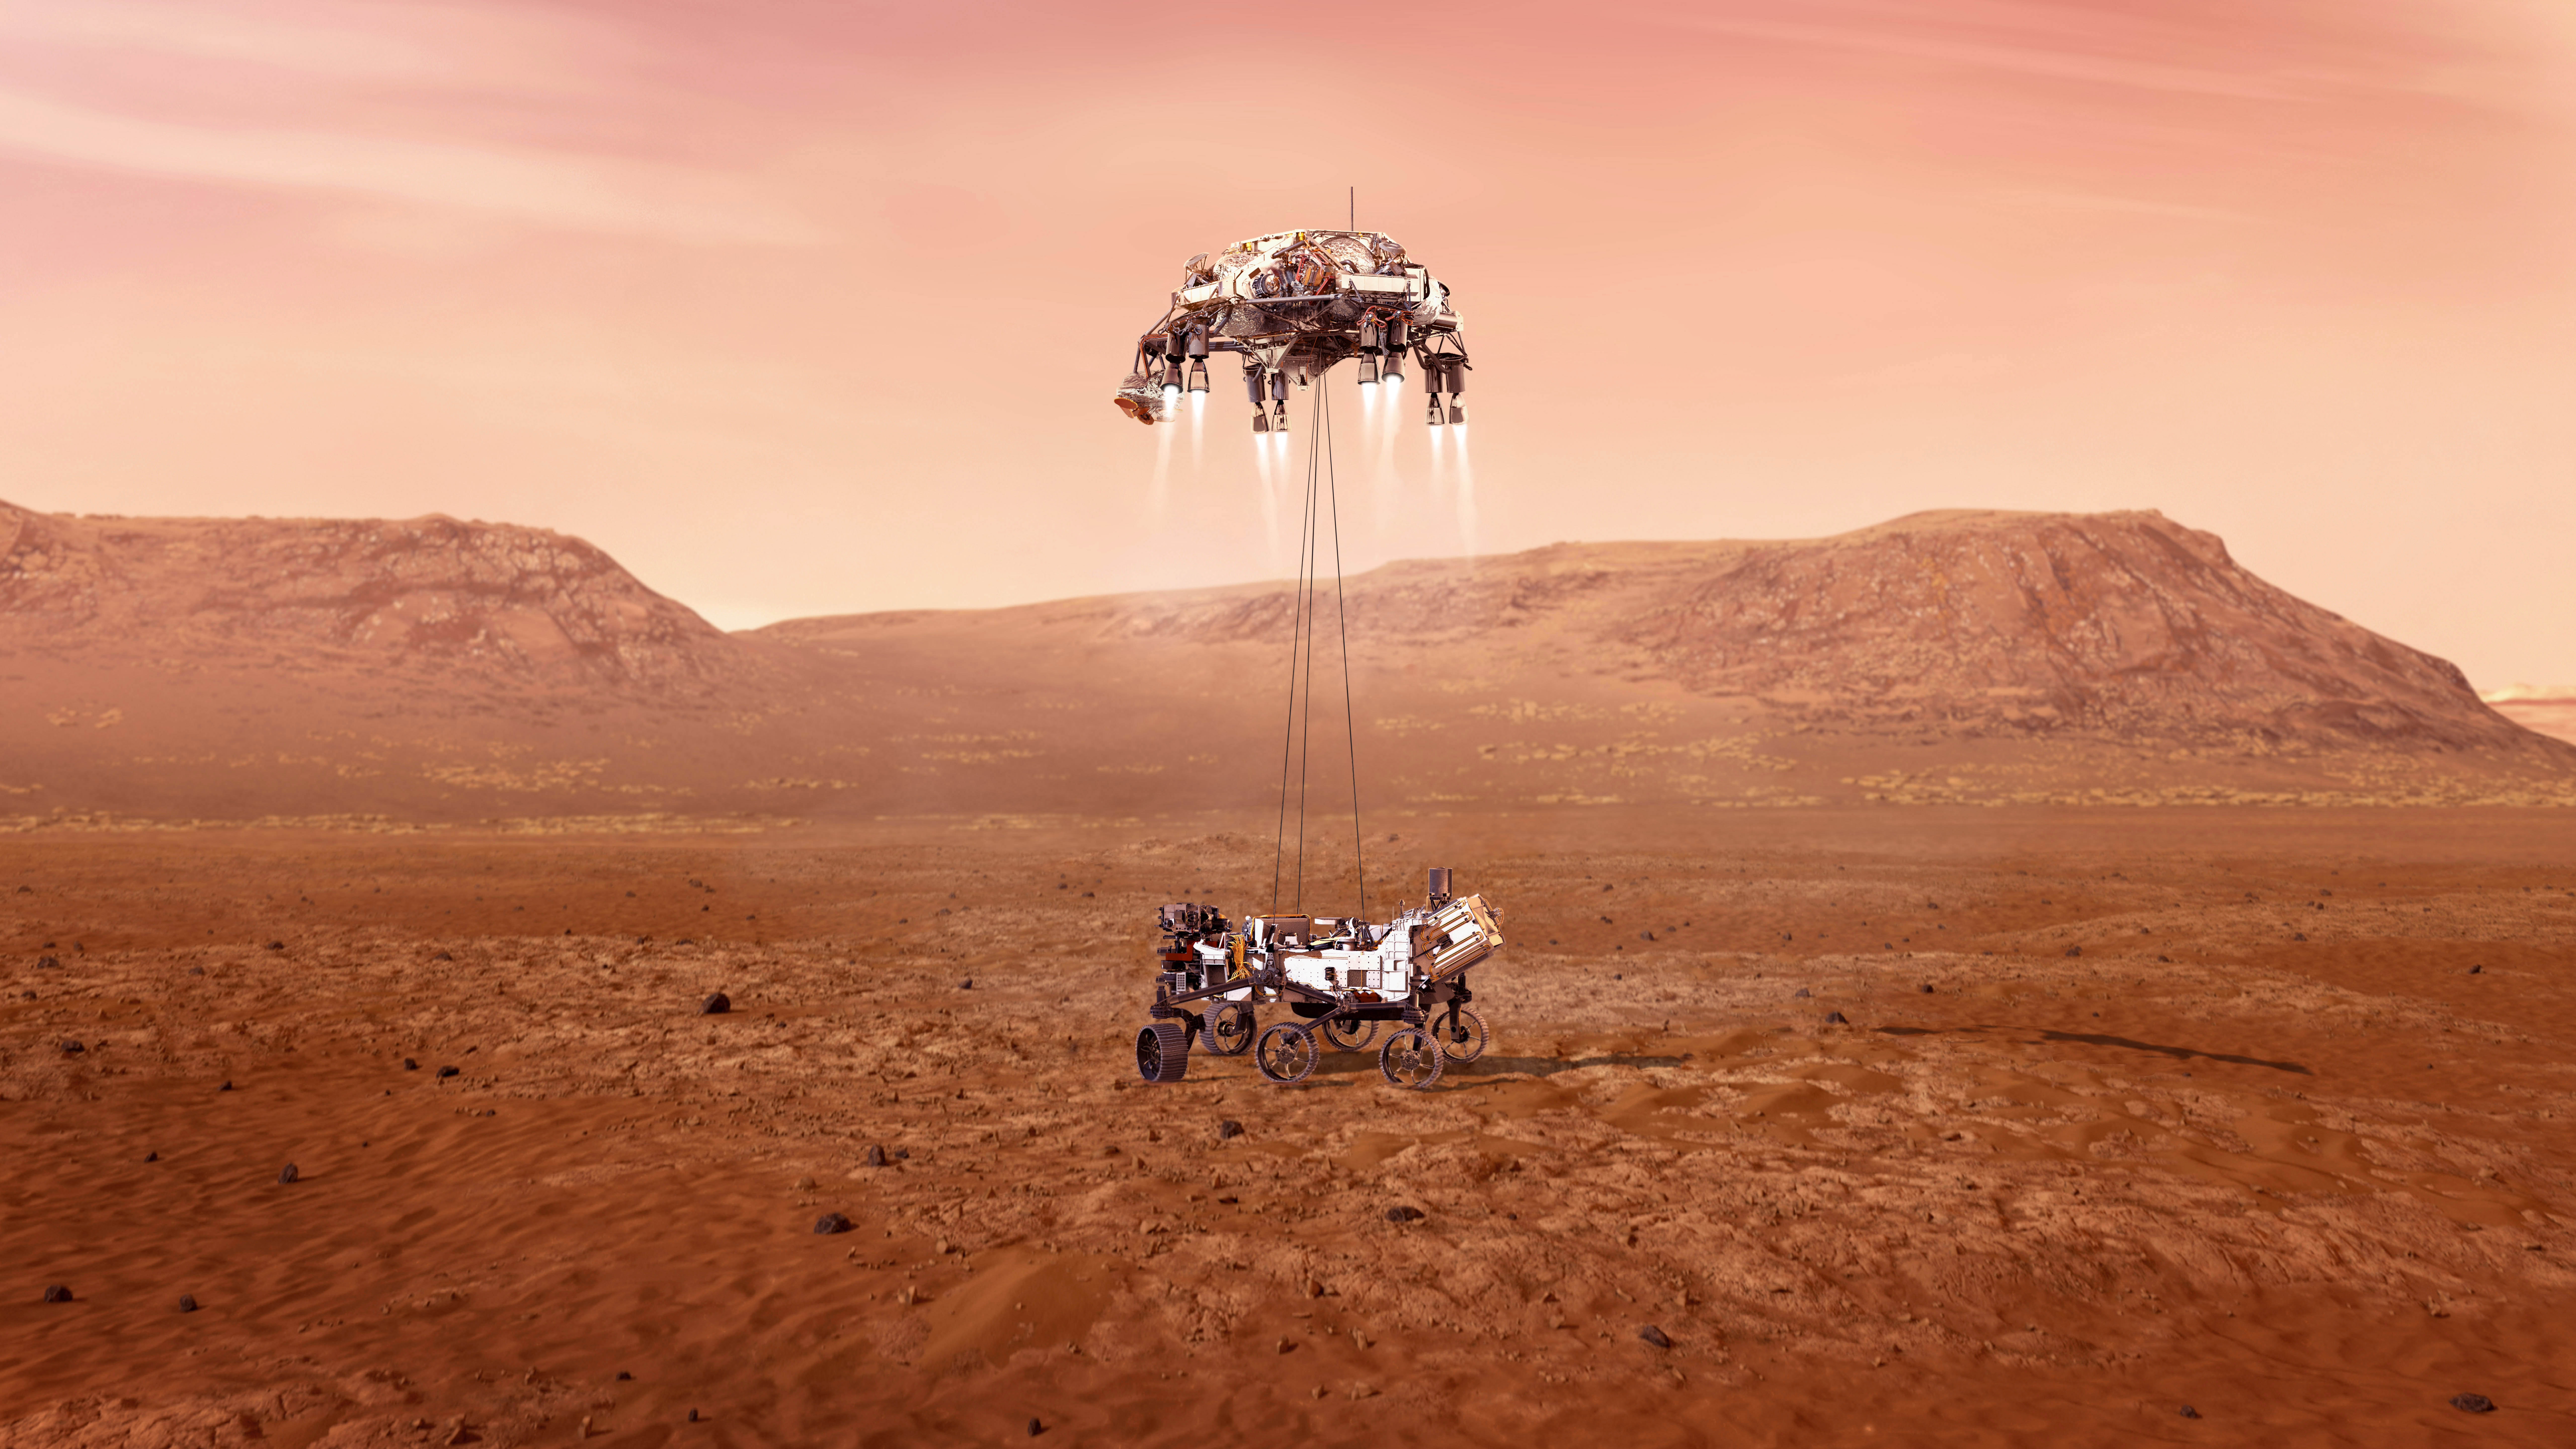 'เฮลิคอปเตอร์' ฝีมือนาซา จ่อขึ้นบินทำสถิติสูงสุดครั้งใหม่บนดาวอังคาร